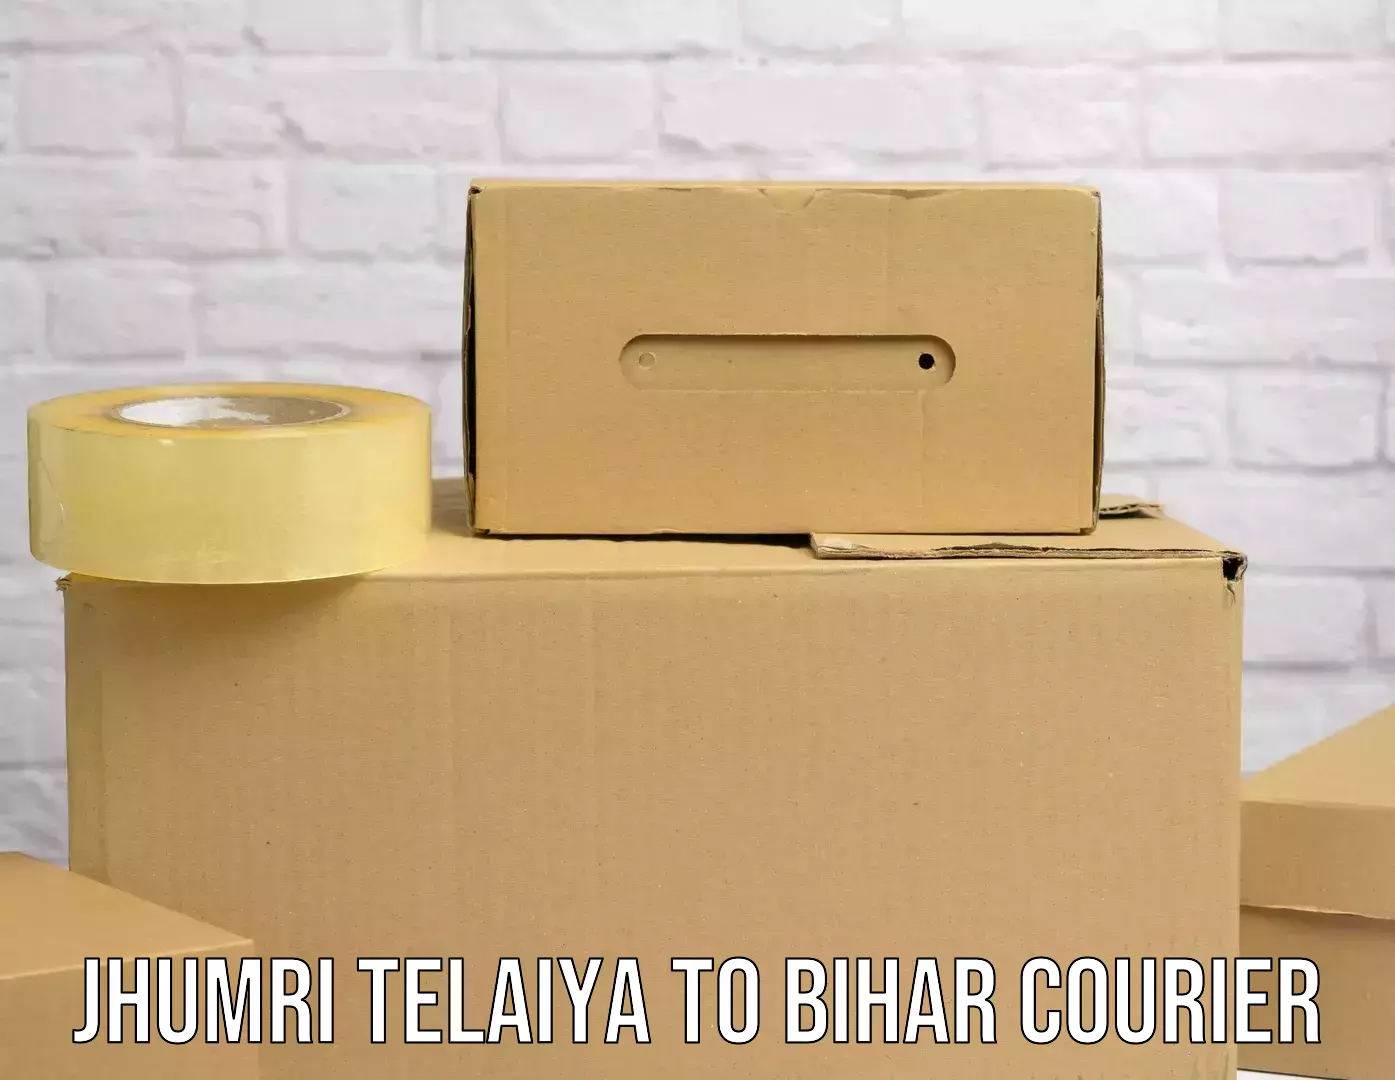 Custom courier packaging in Jhumri Telaiya to Siwan